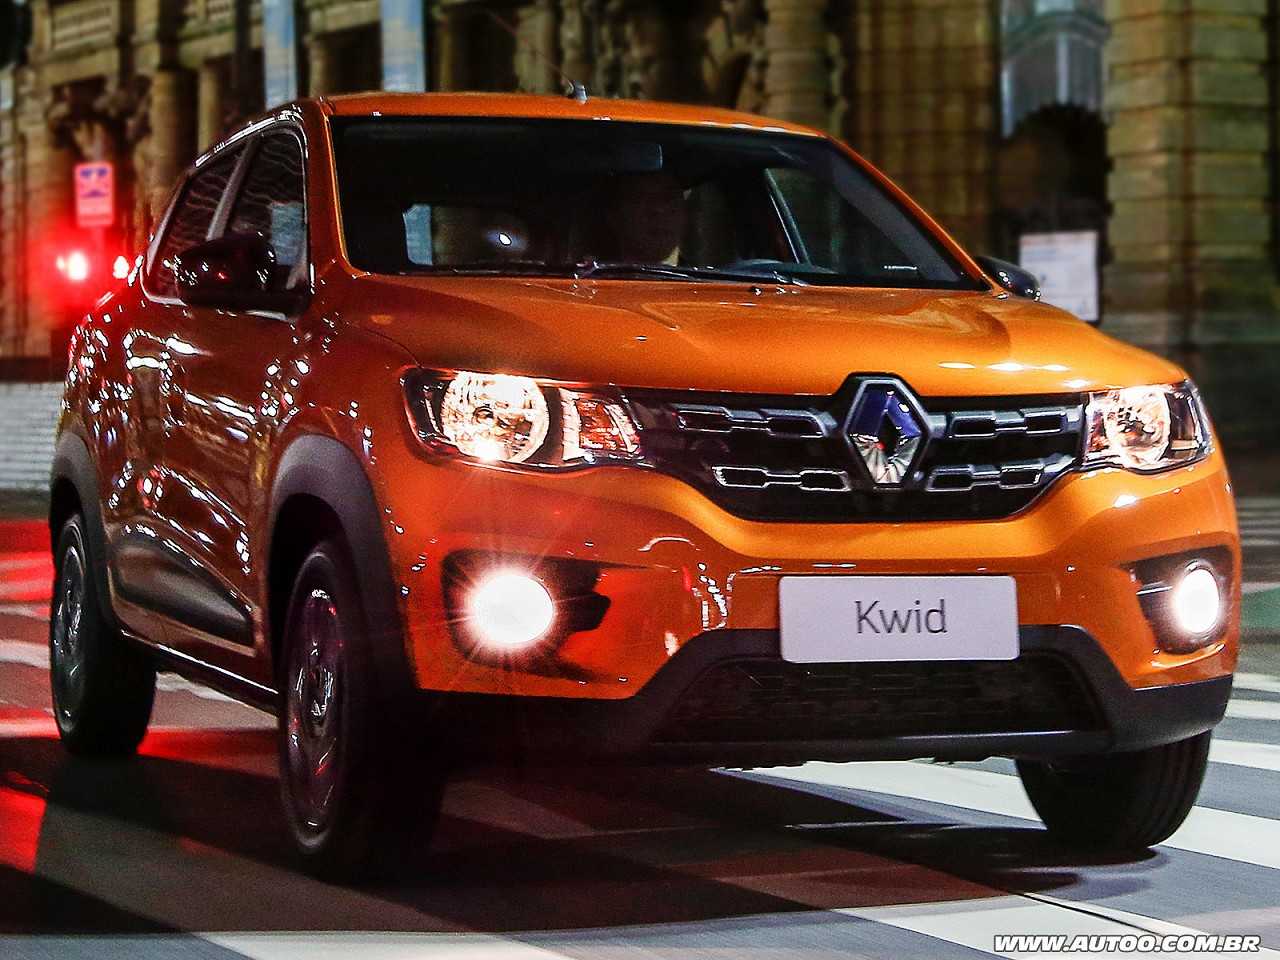 Renault Kwid 2018